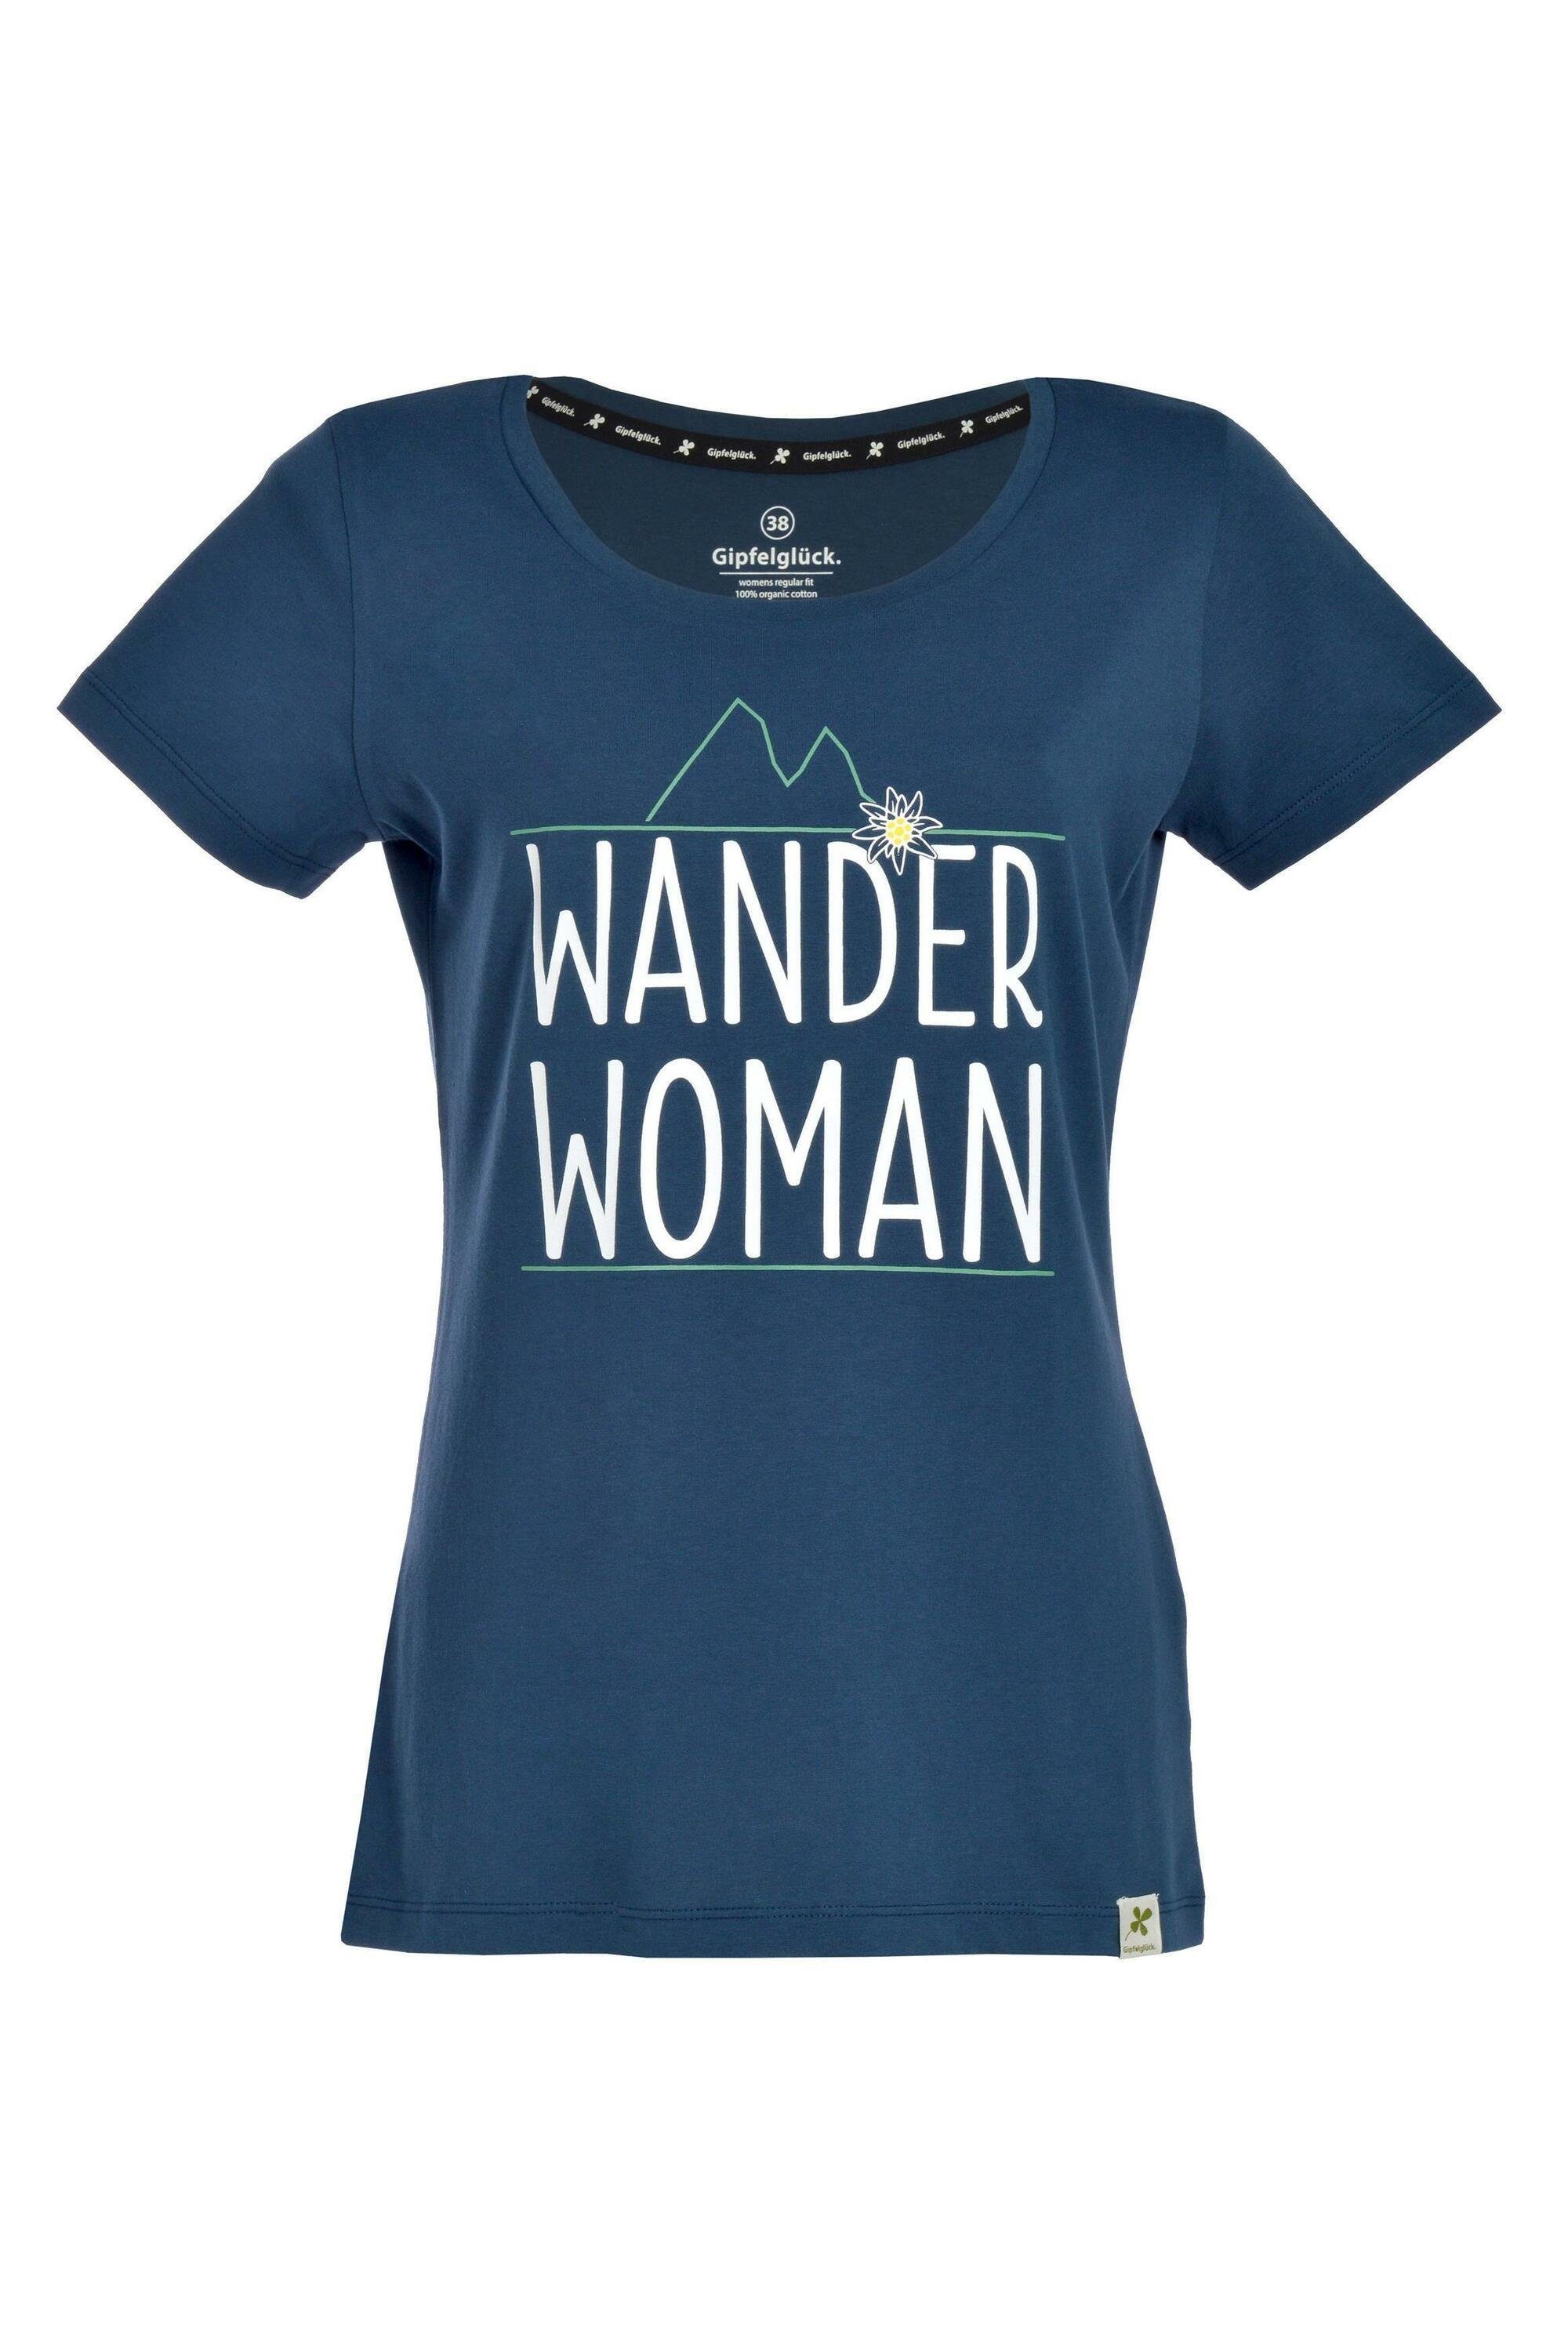 T-Shirt Bio-Baumwolle Carlotta Navy Damen, aus Gipfelglück für